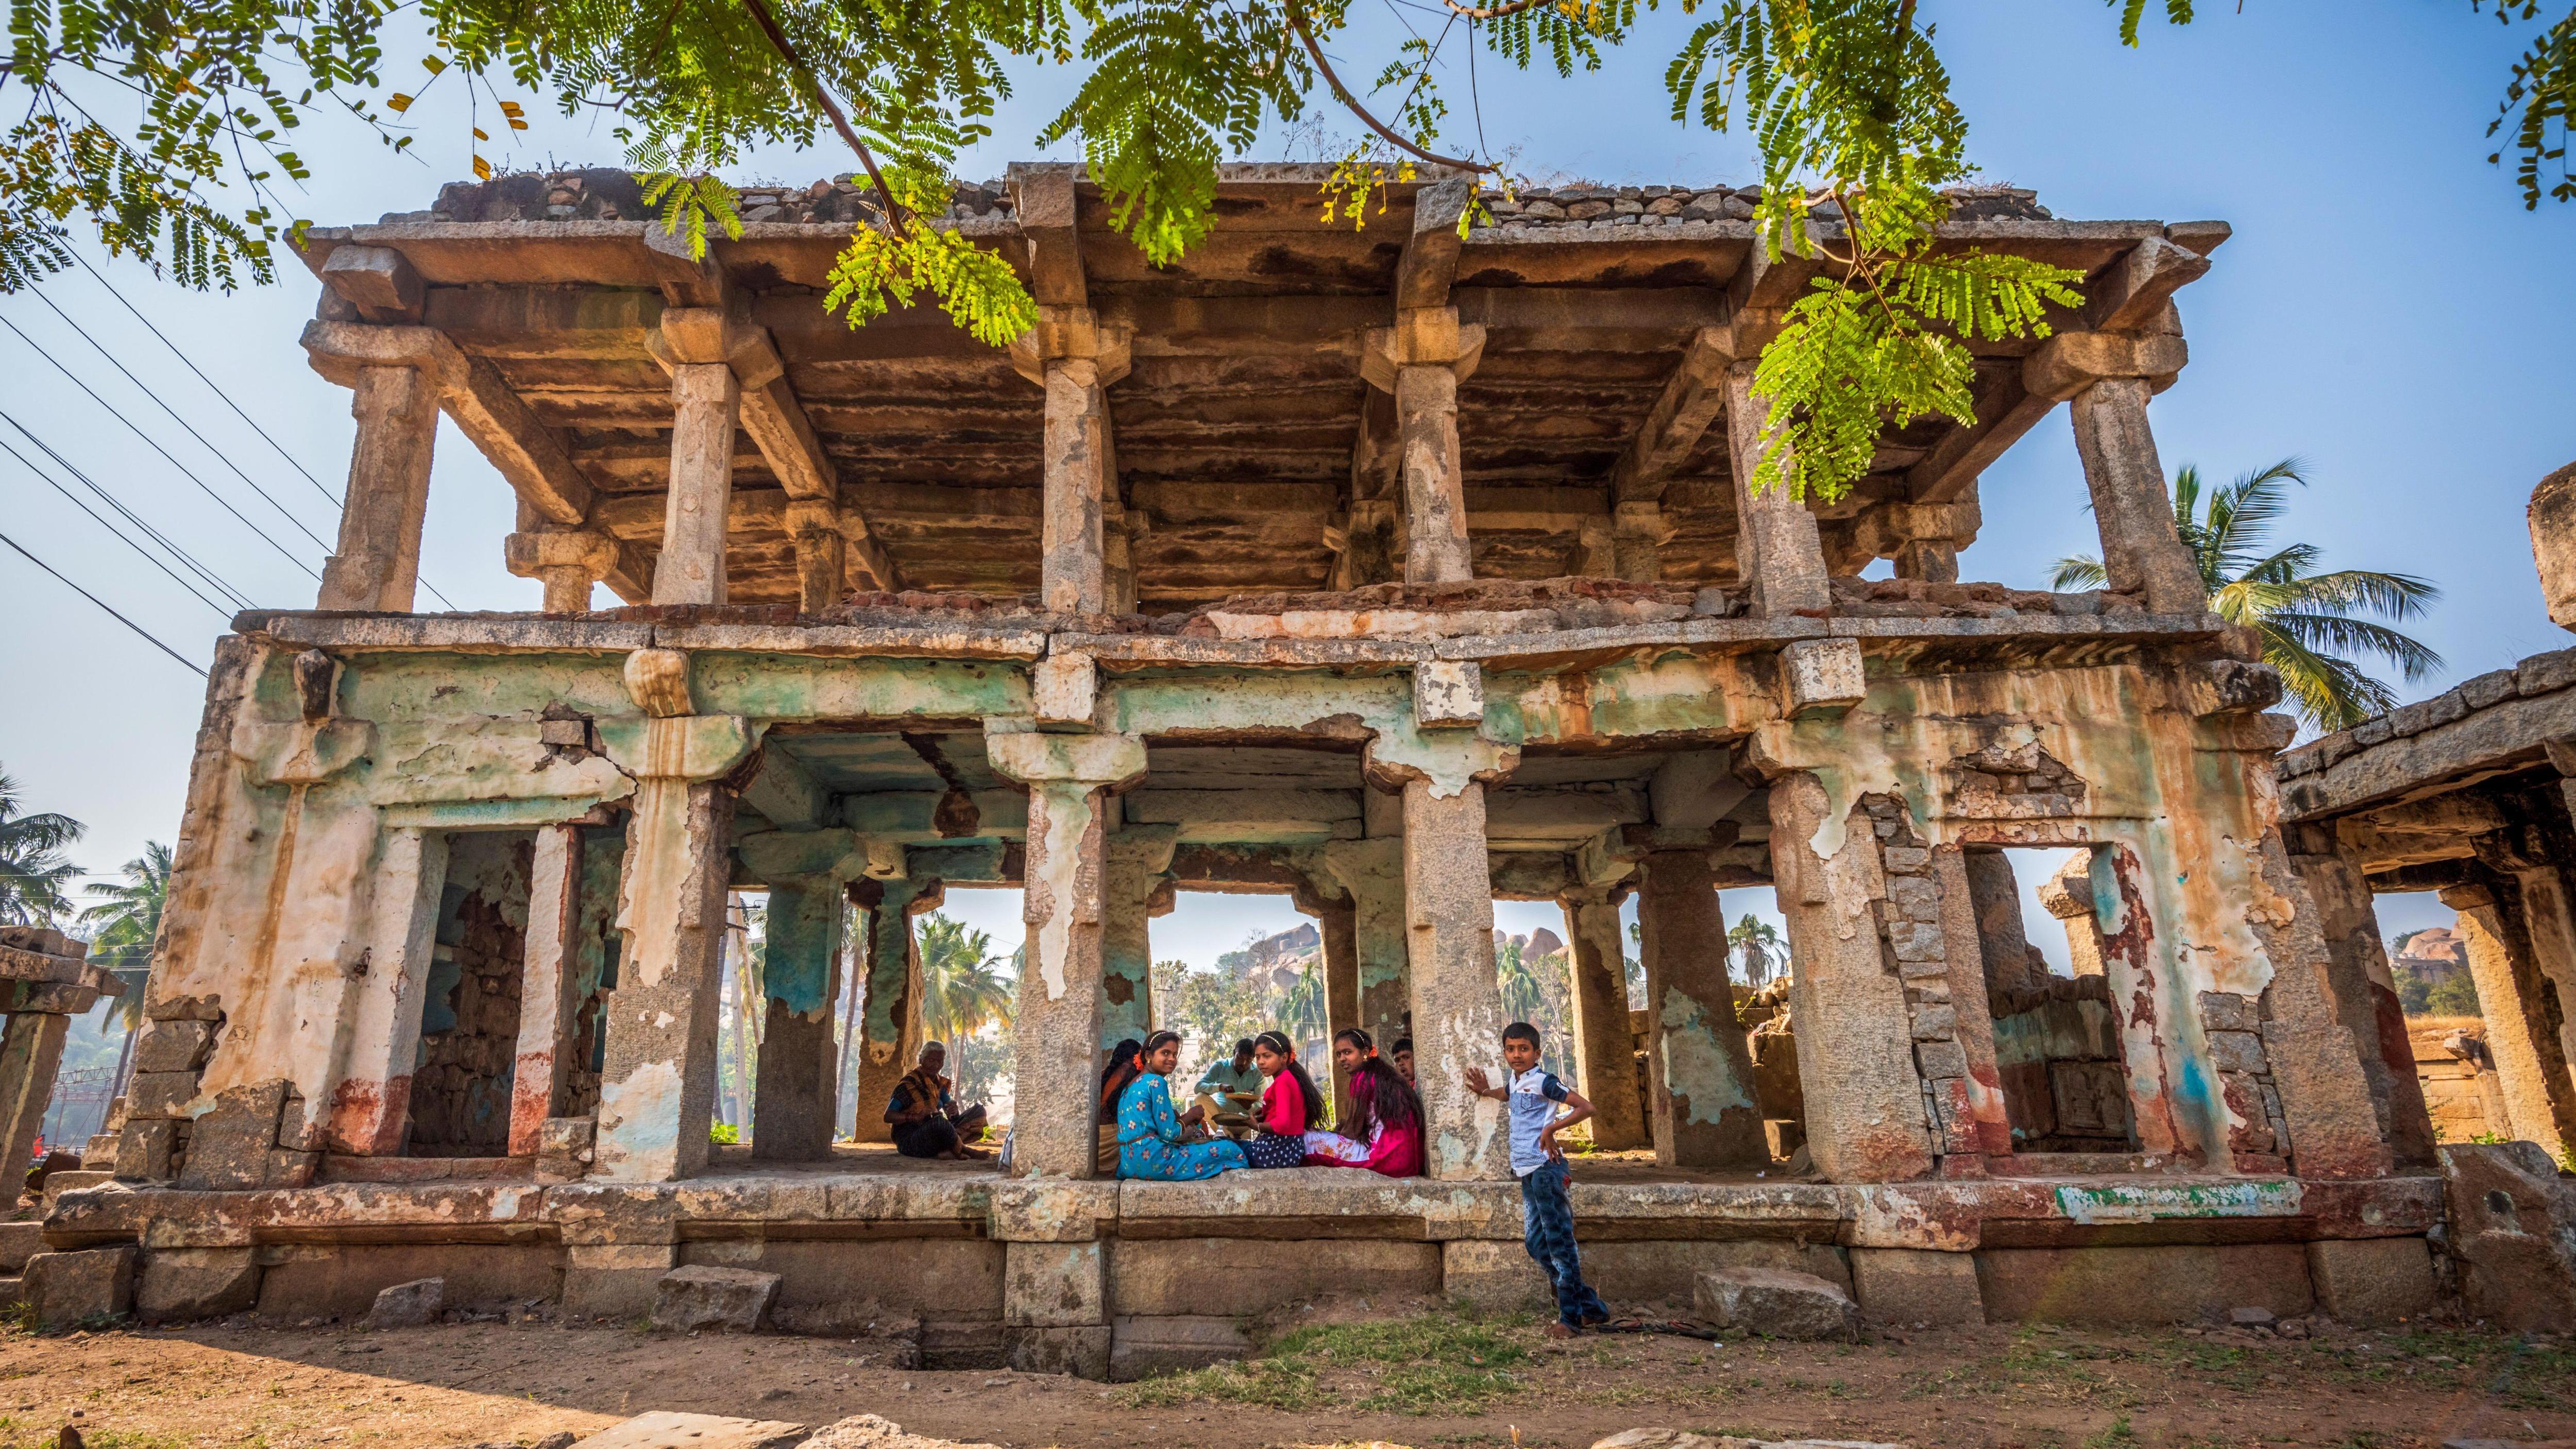 Vijayanagara ruins in Hampi, Karnataka